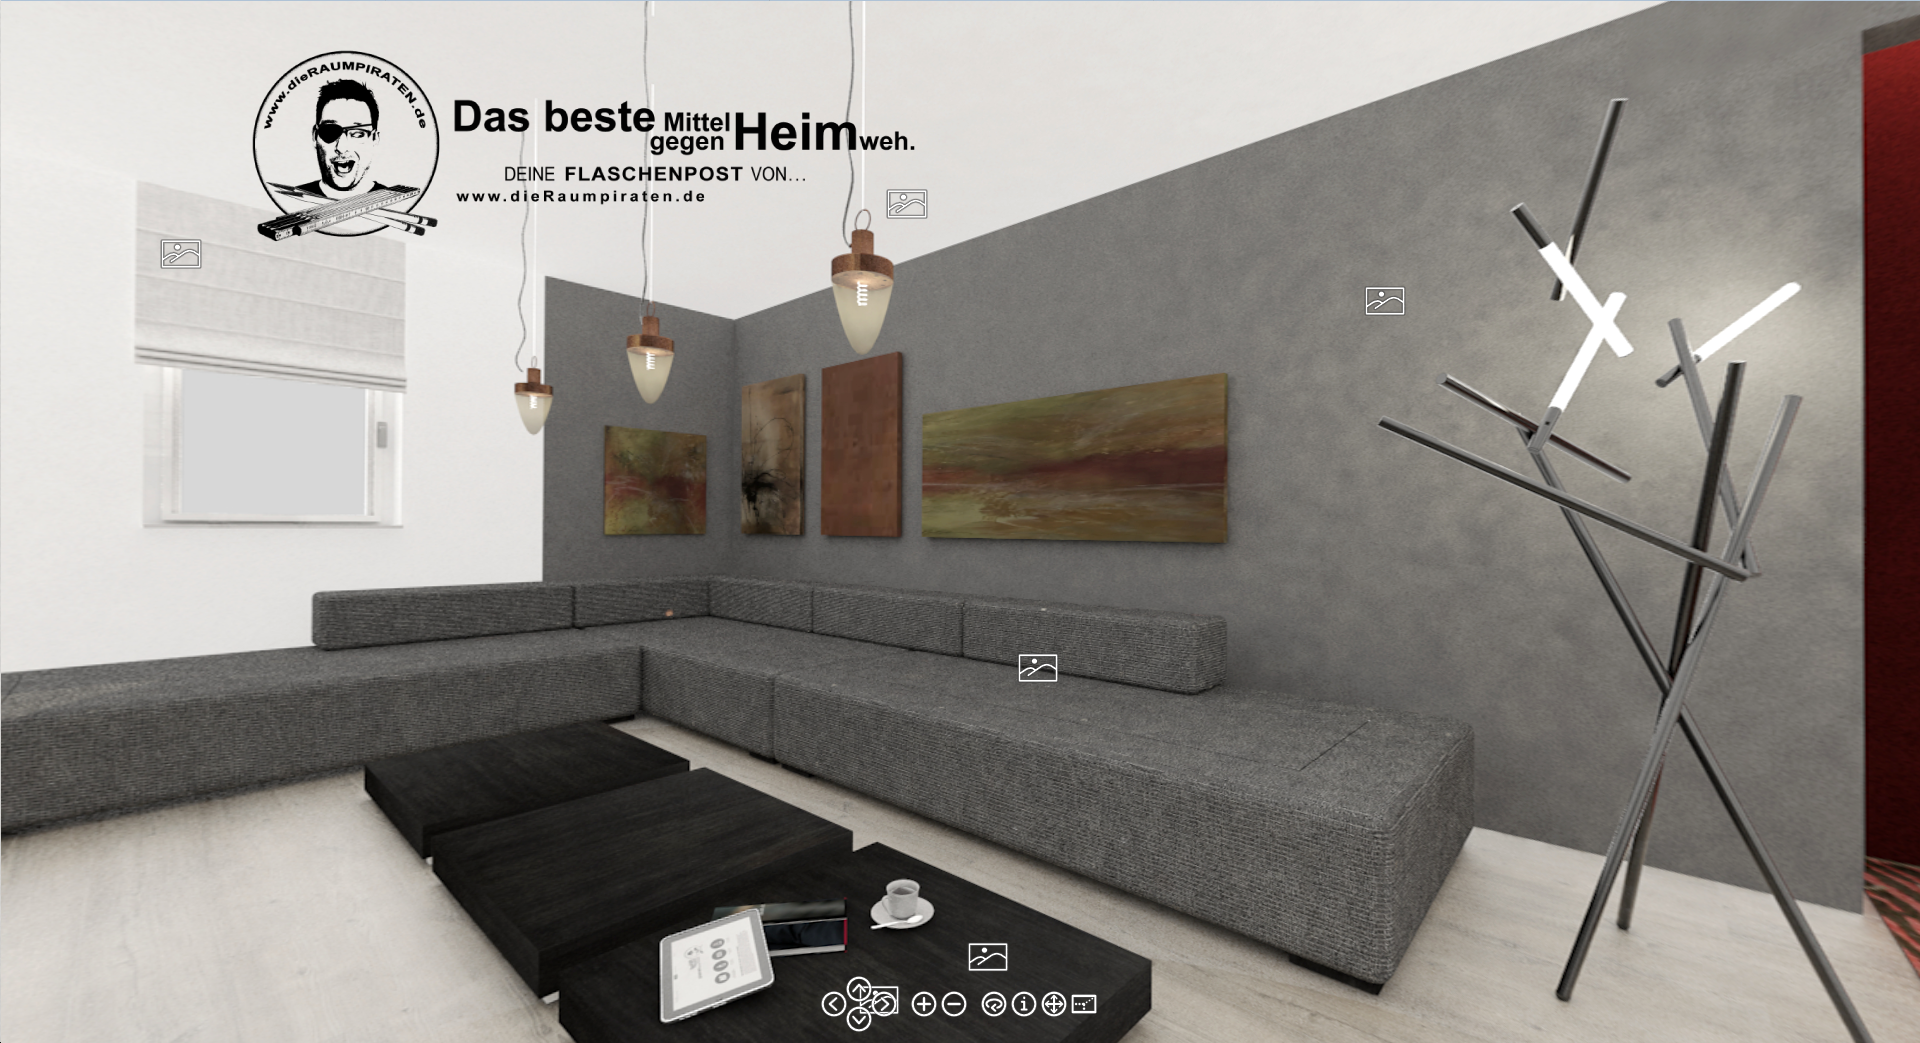 #Asymmetrie #Wohnzimmer #Bildergalerie #dunkle Wand #graue Couch